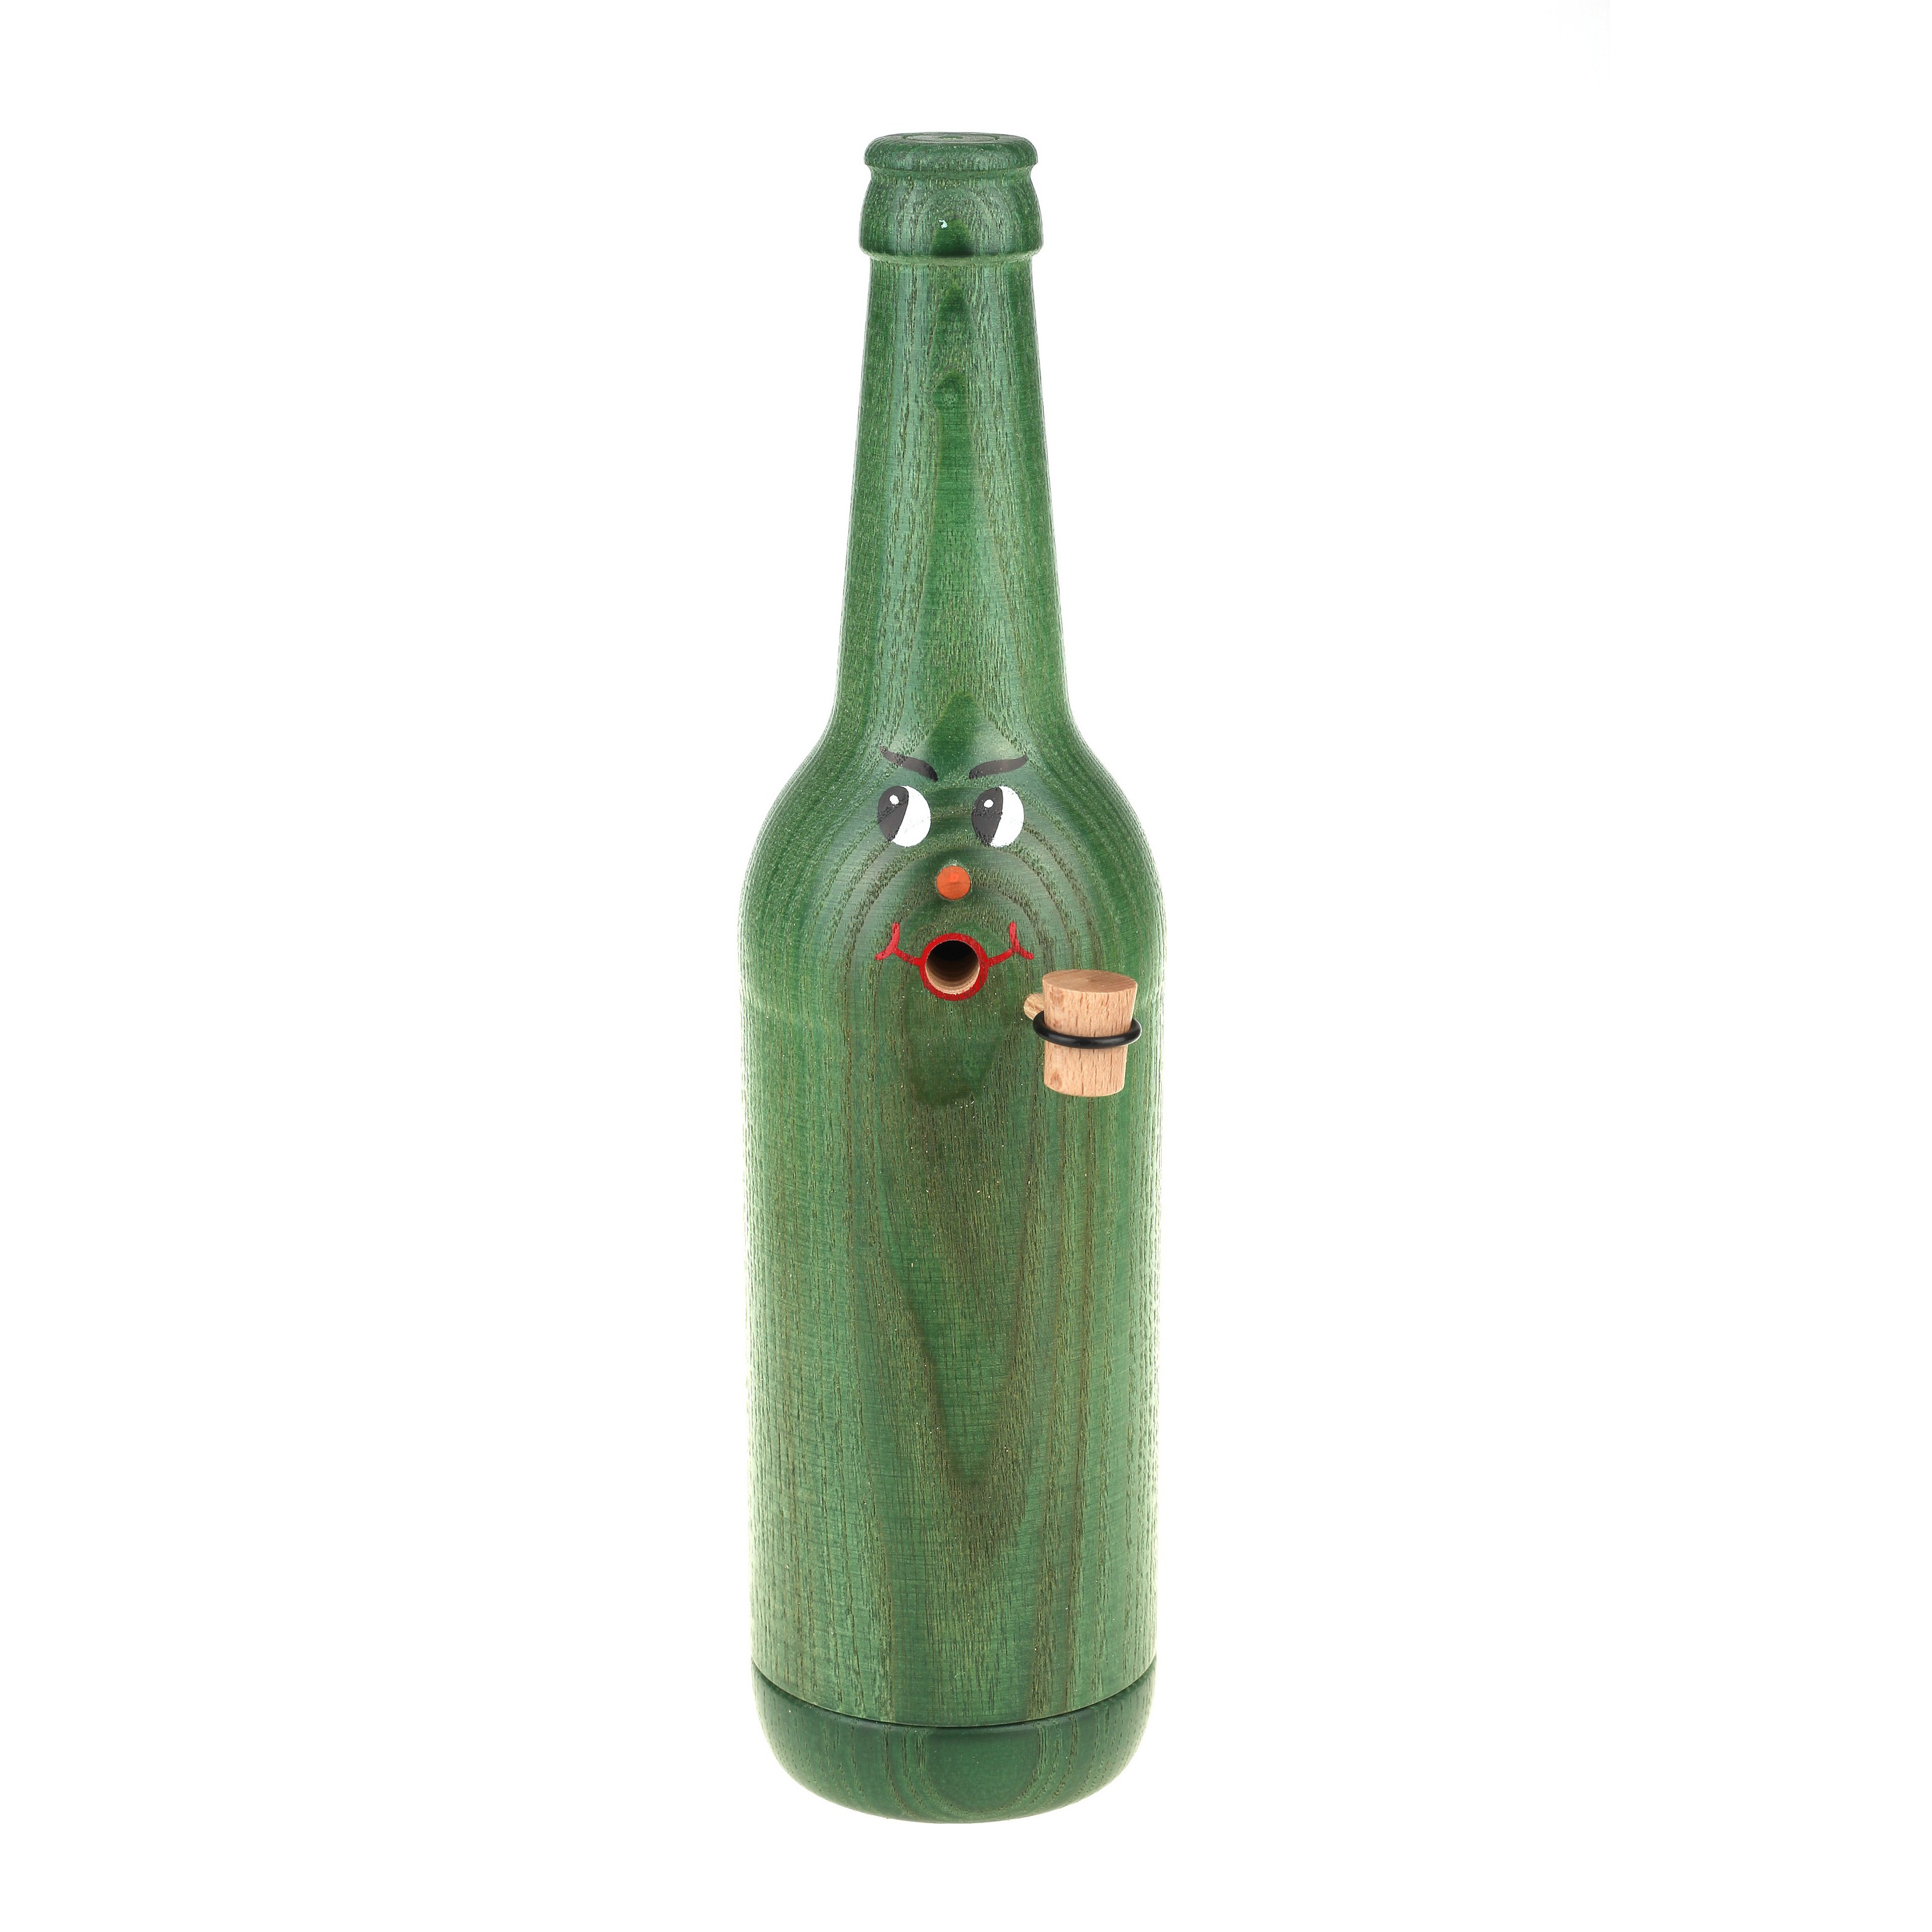 Räucherflasche Räucherfigur Rauchfigur Räuchermännchen Bier Longneck 0,5 - grün